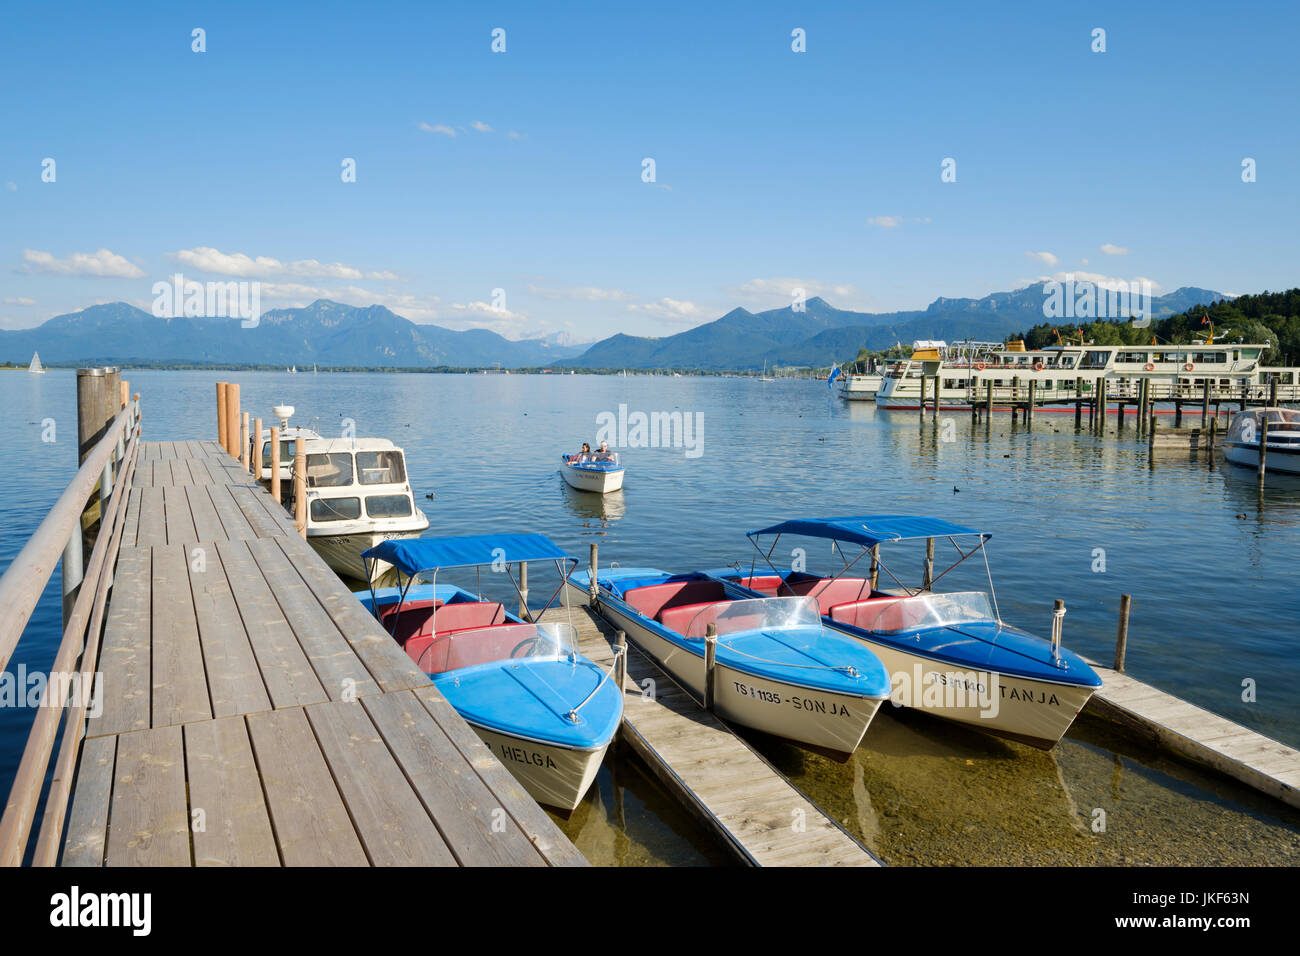 Hafen Sie am See Chiemsee, Prien Stock, Upper Bavaria, Bayern, Deutschland, Europa Stockfoto